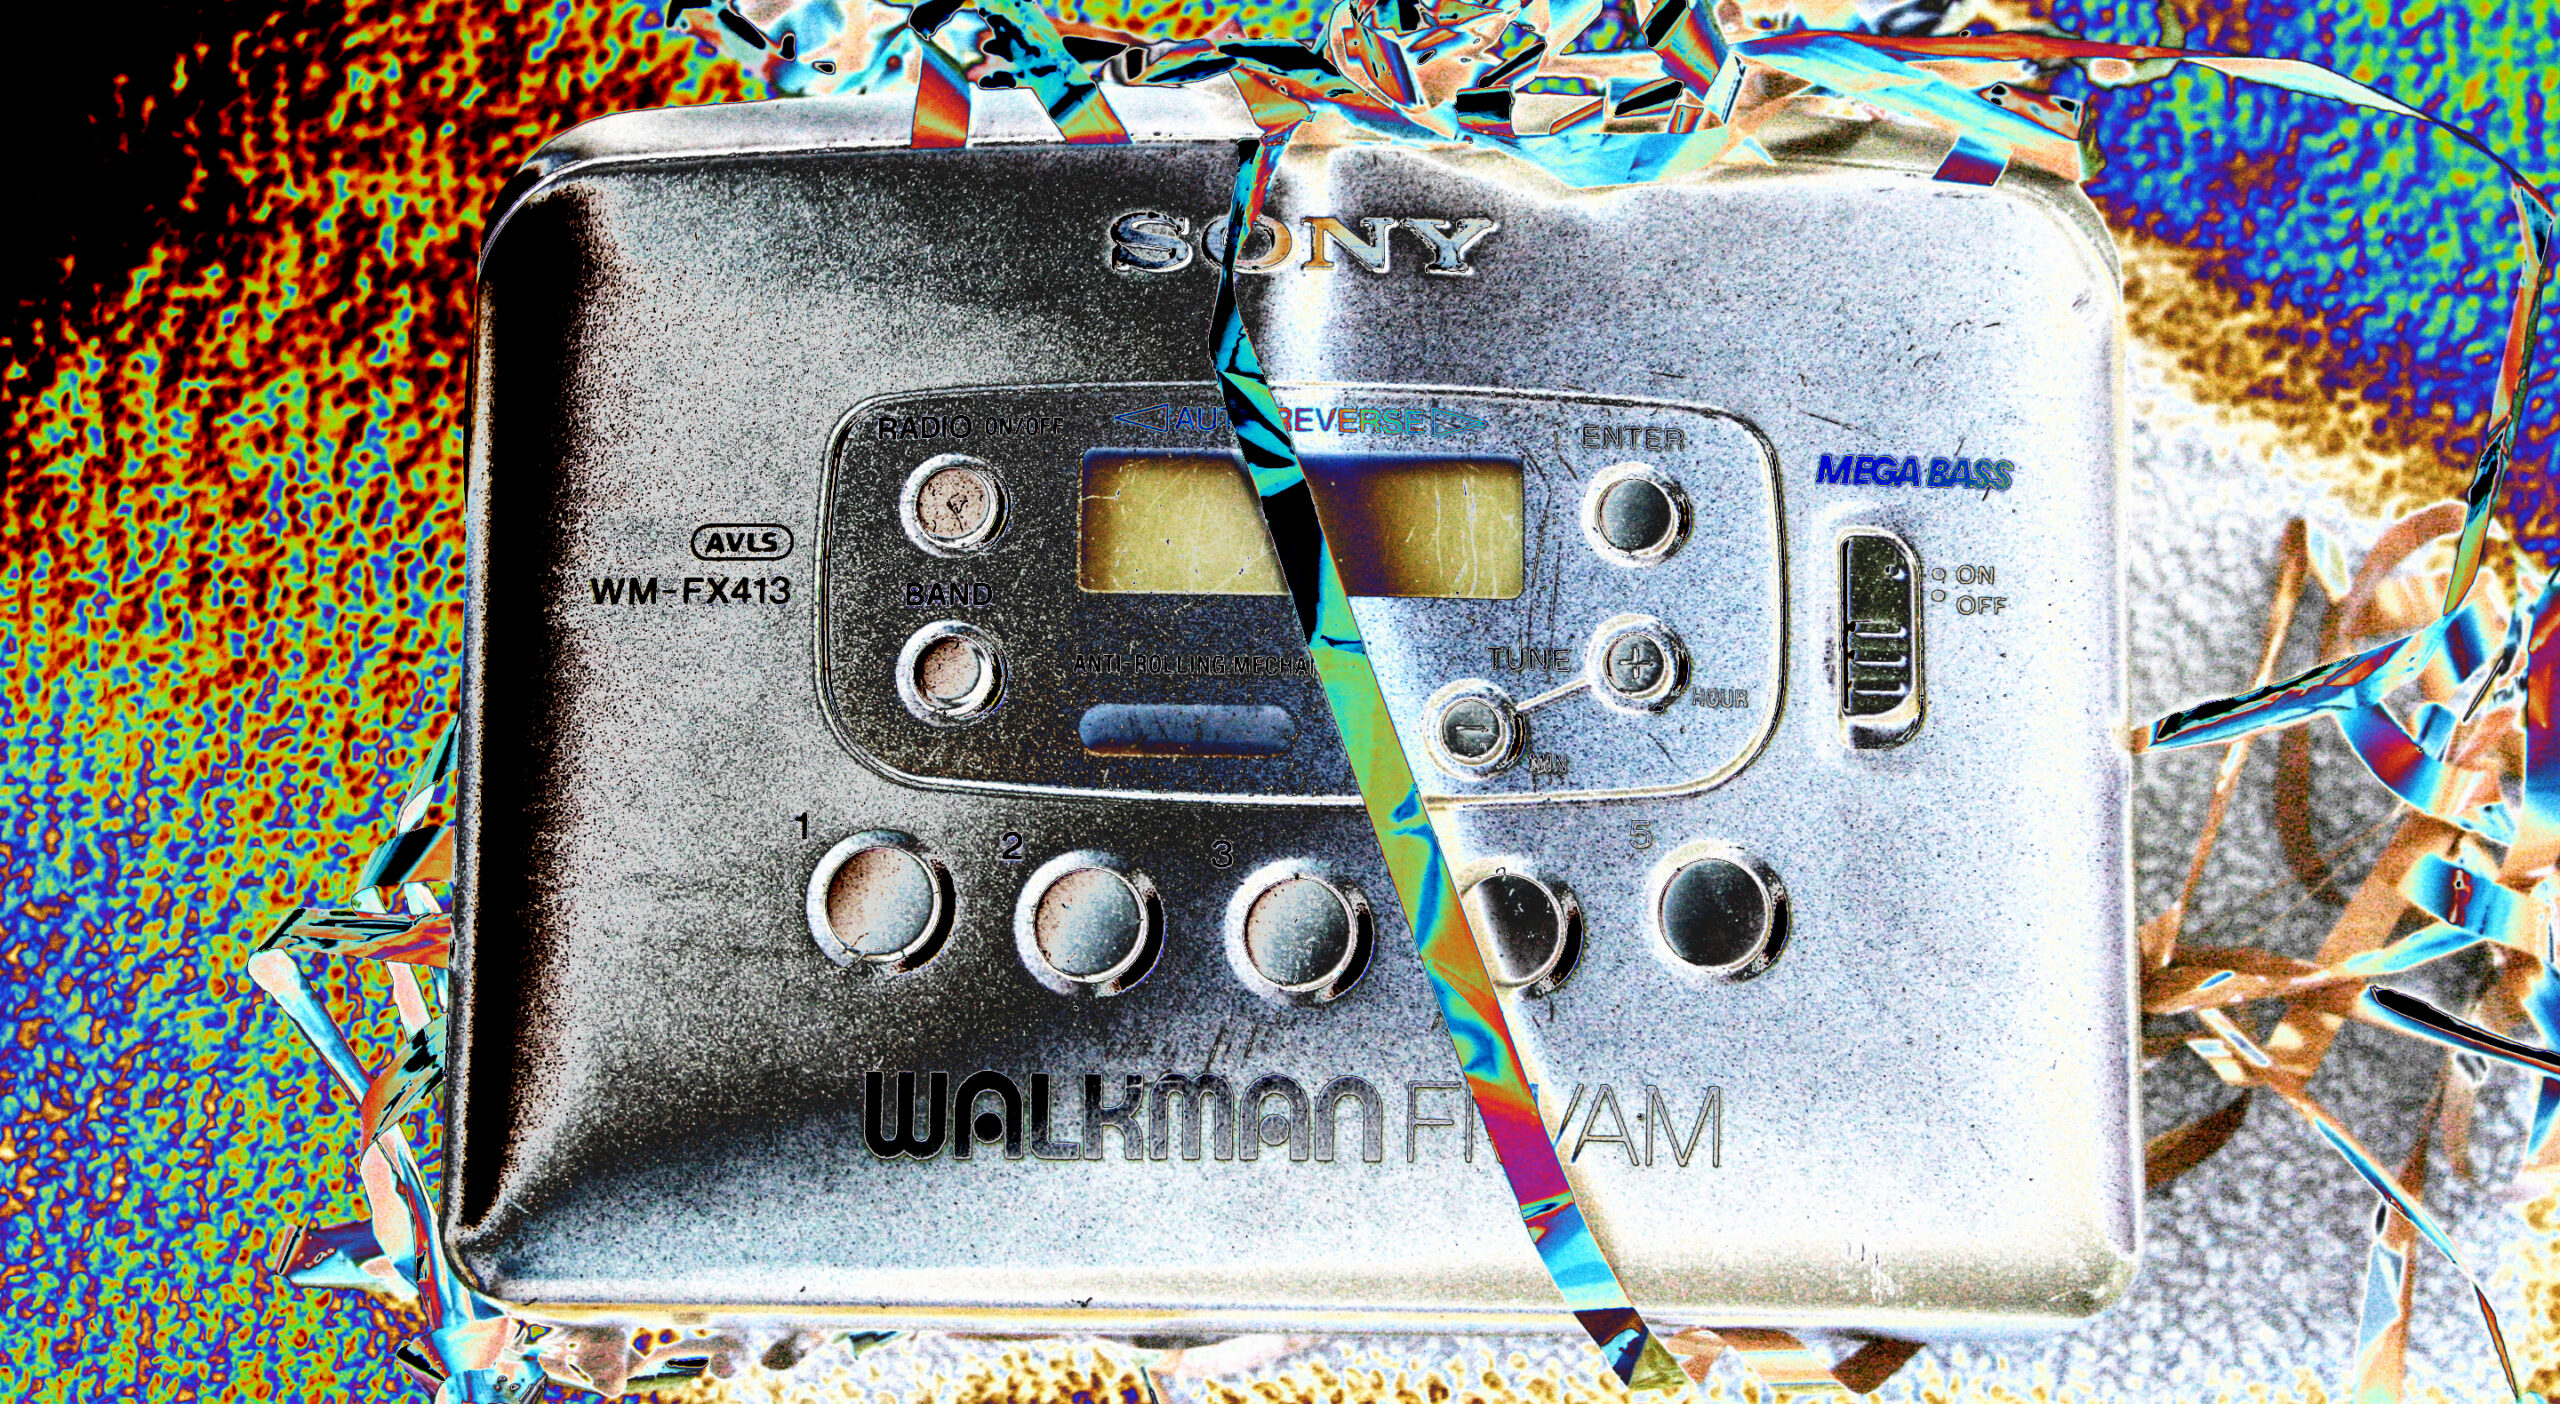 테이프가 늘어진 소니의 워크맨 카세트 테이프이다.